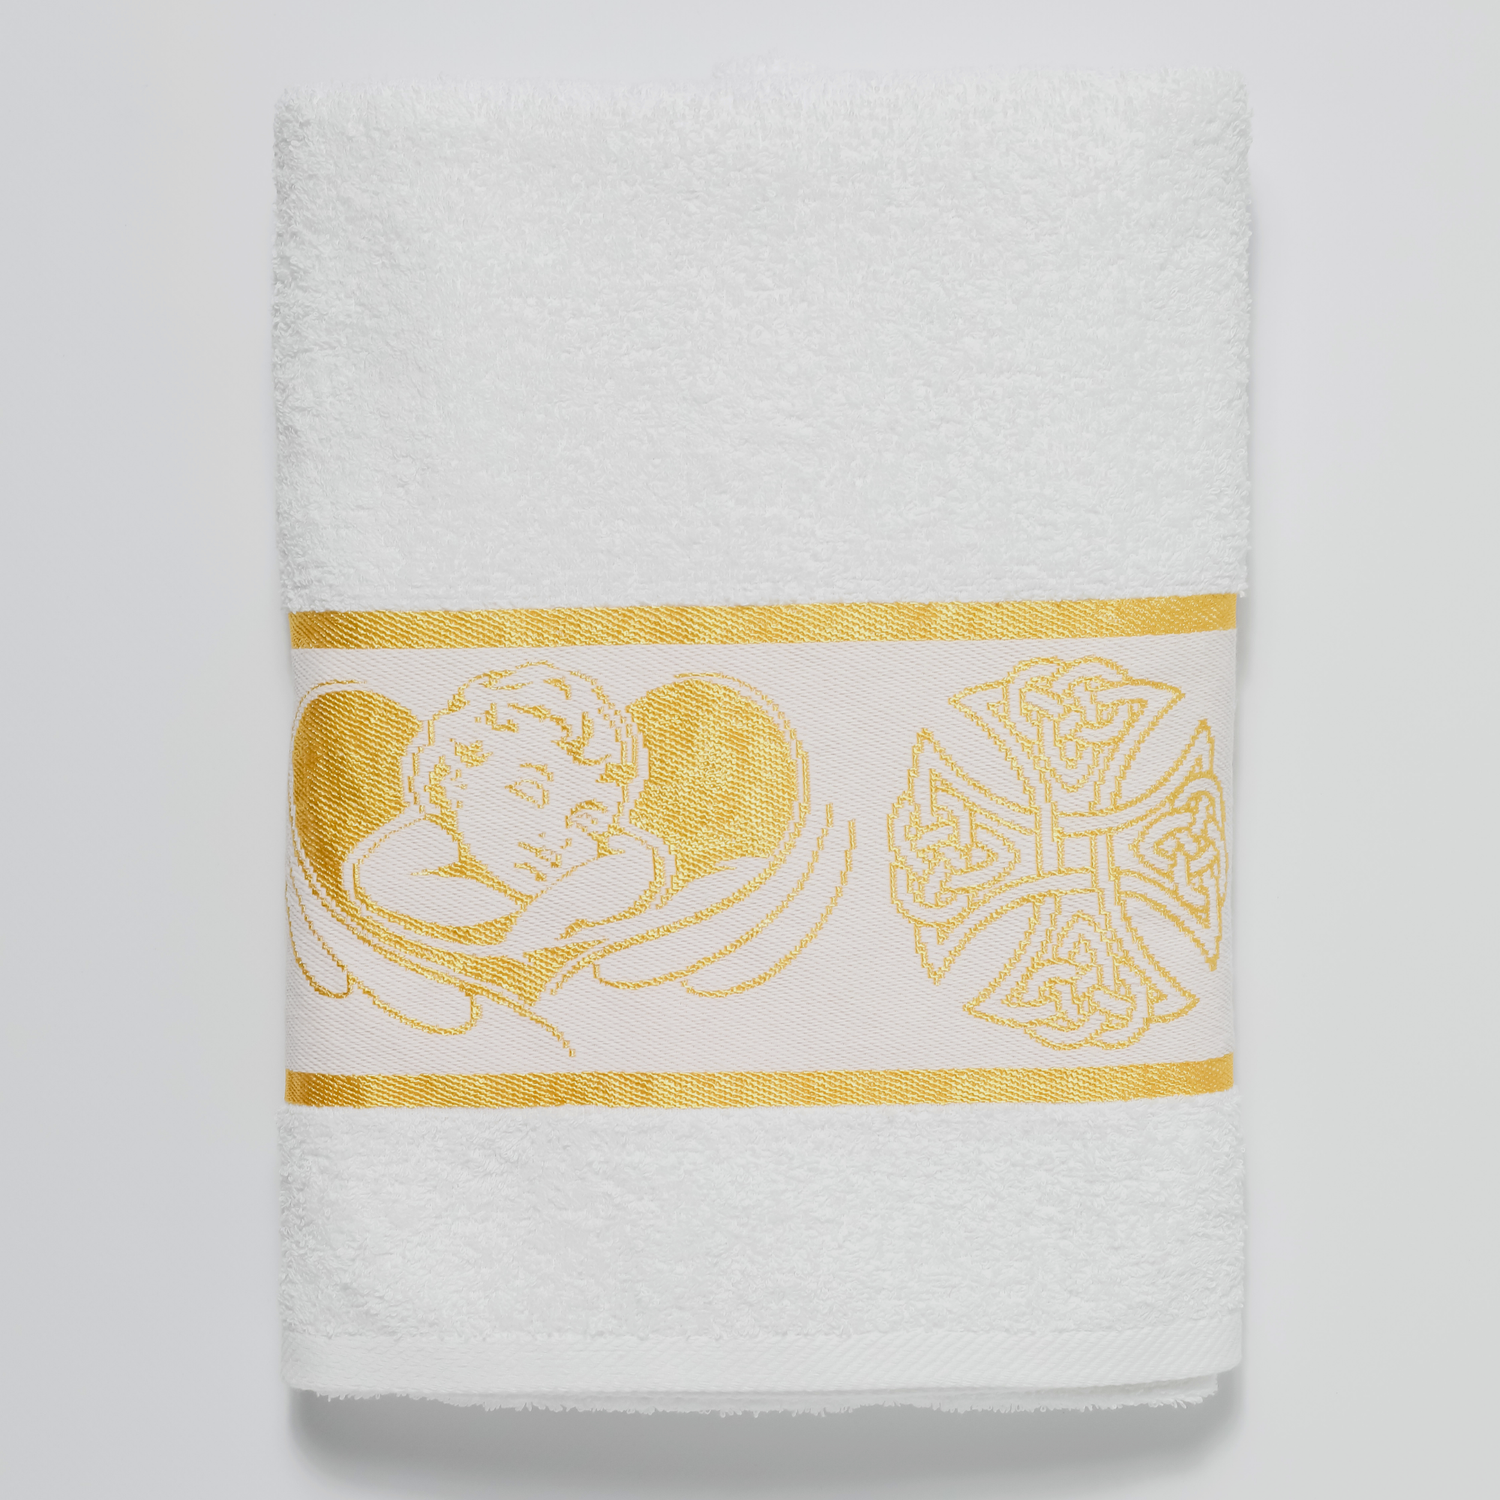 Полотенце Вышневолоцкий текстиль крестильное золото 70х140 см - фото 1